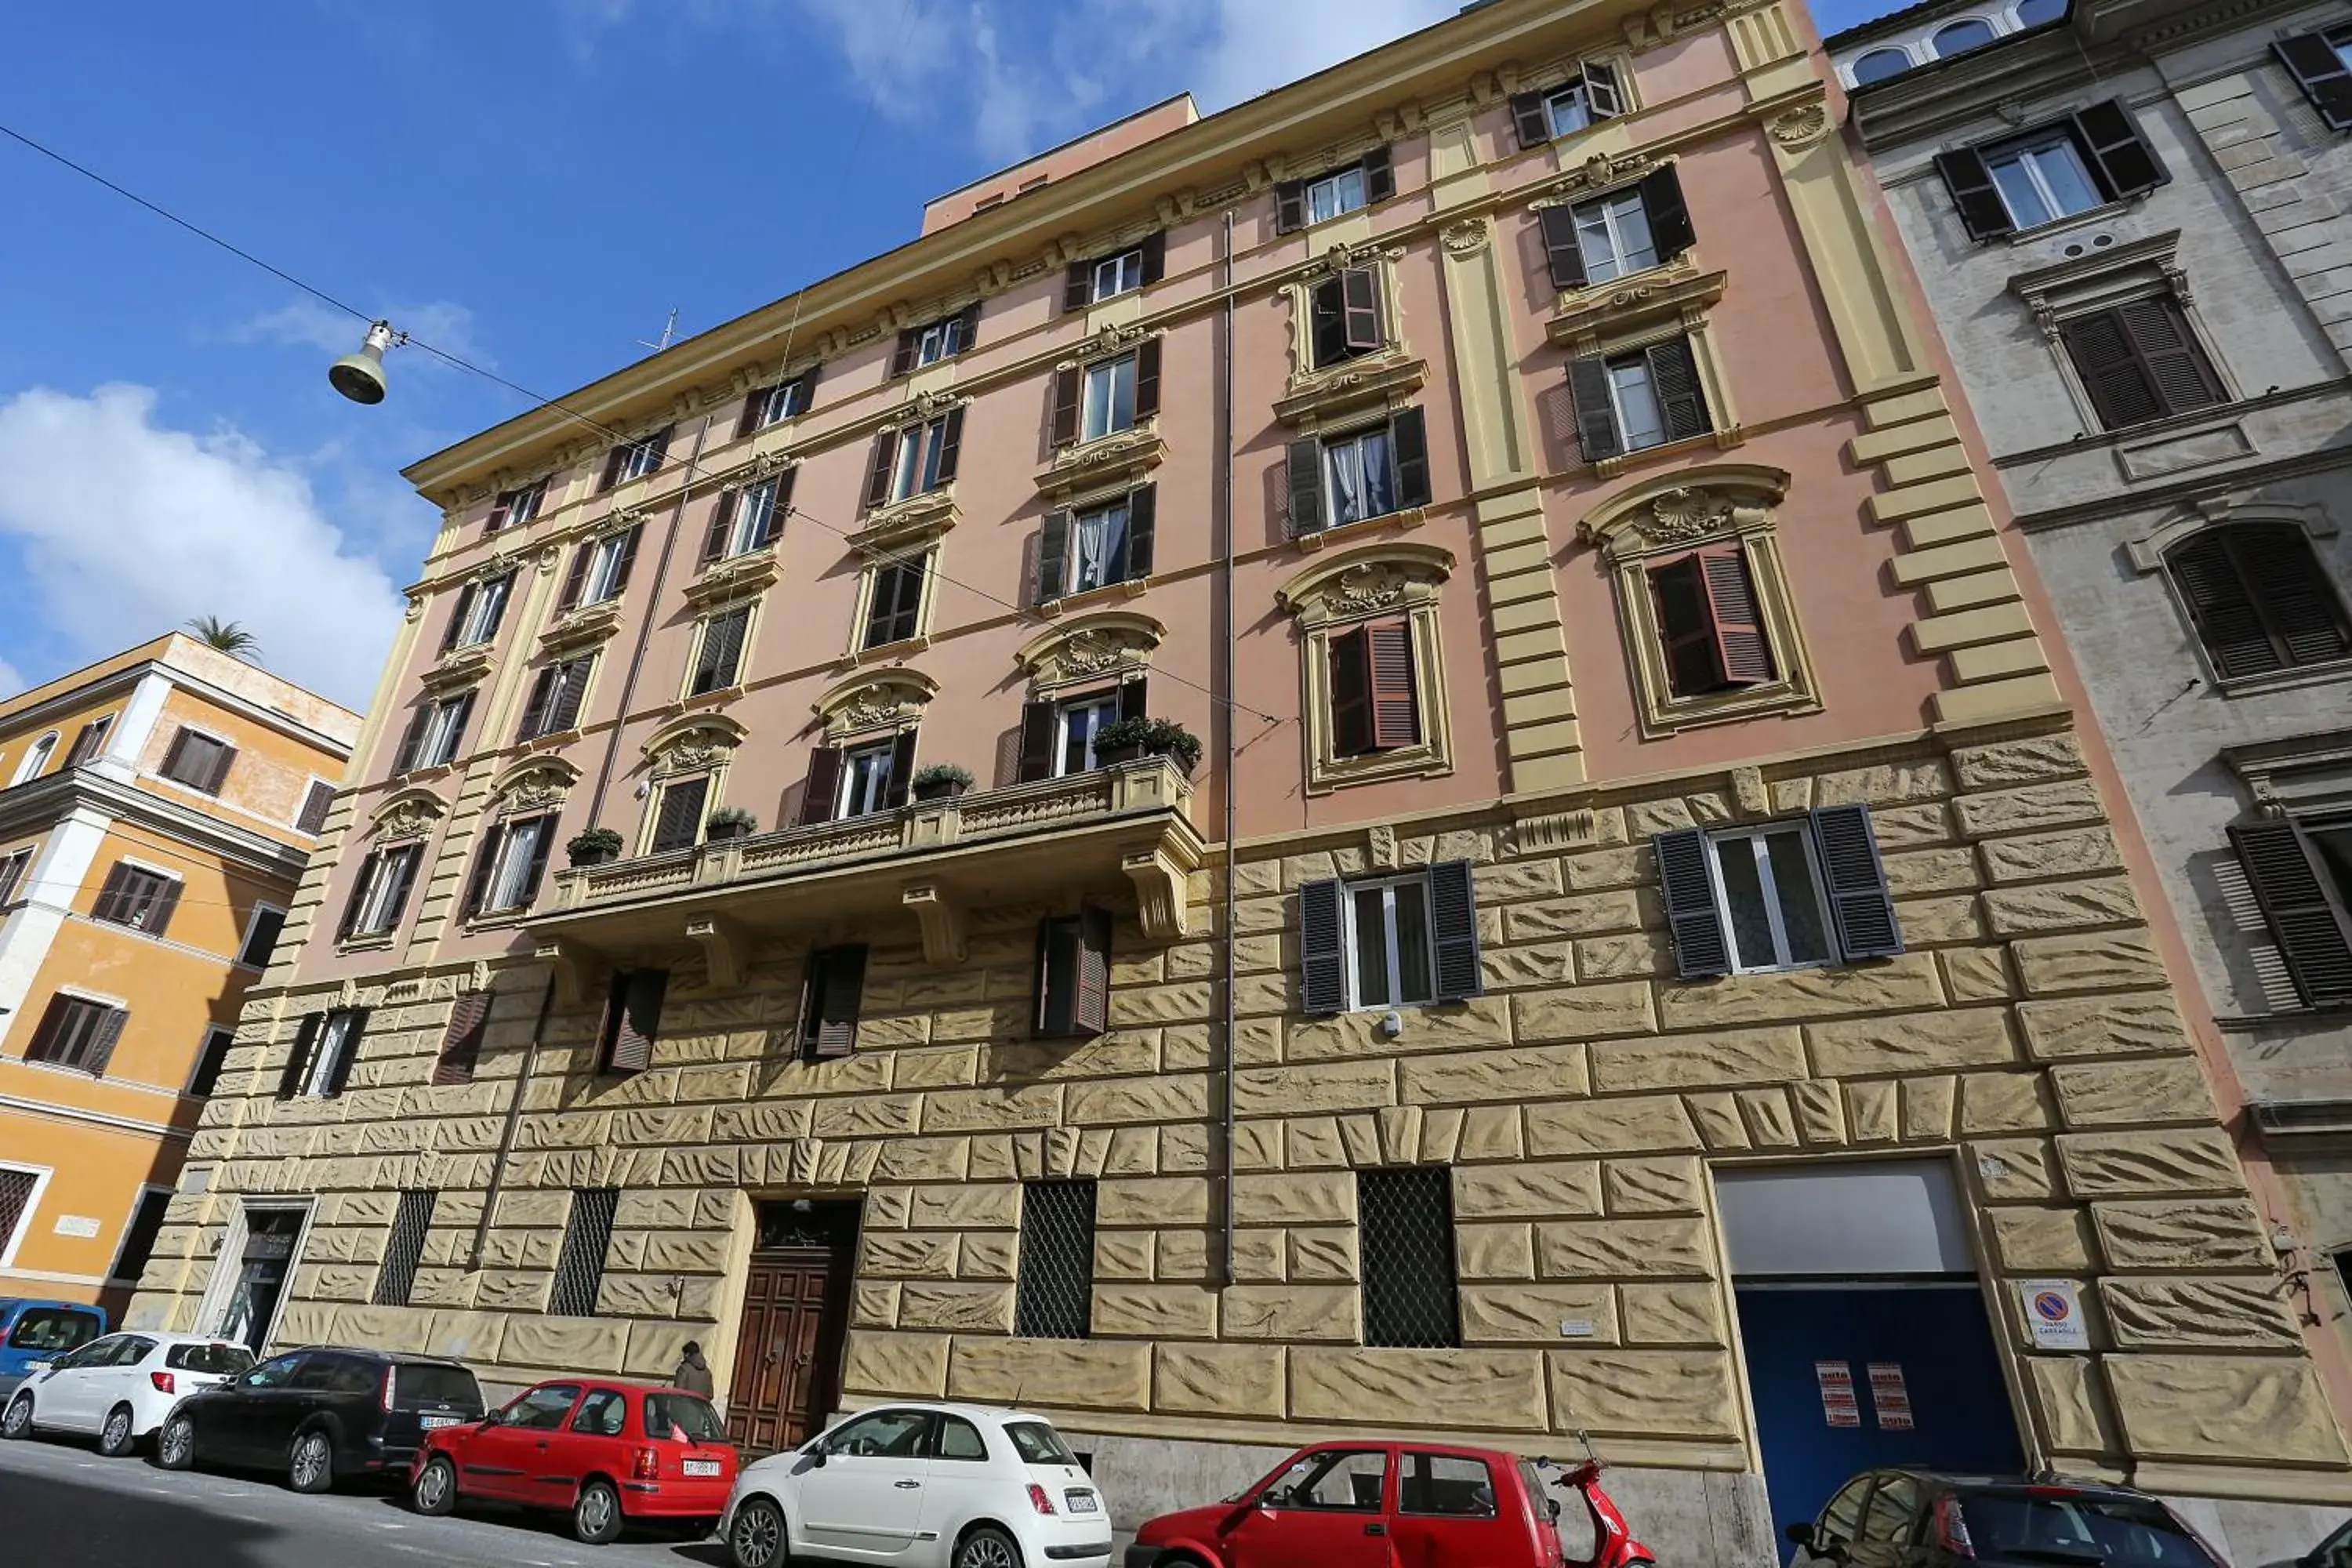 Property Building in Capricci Romani